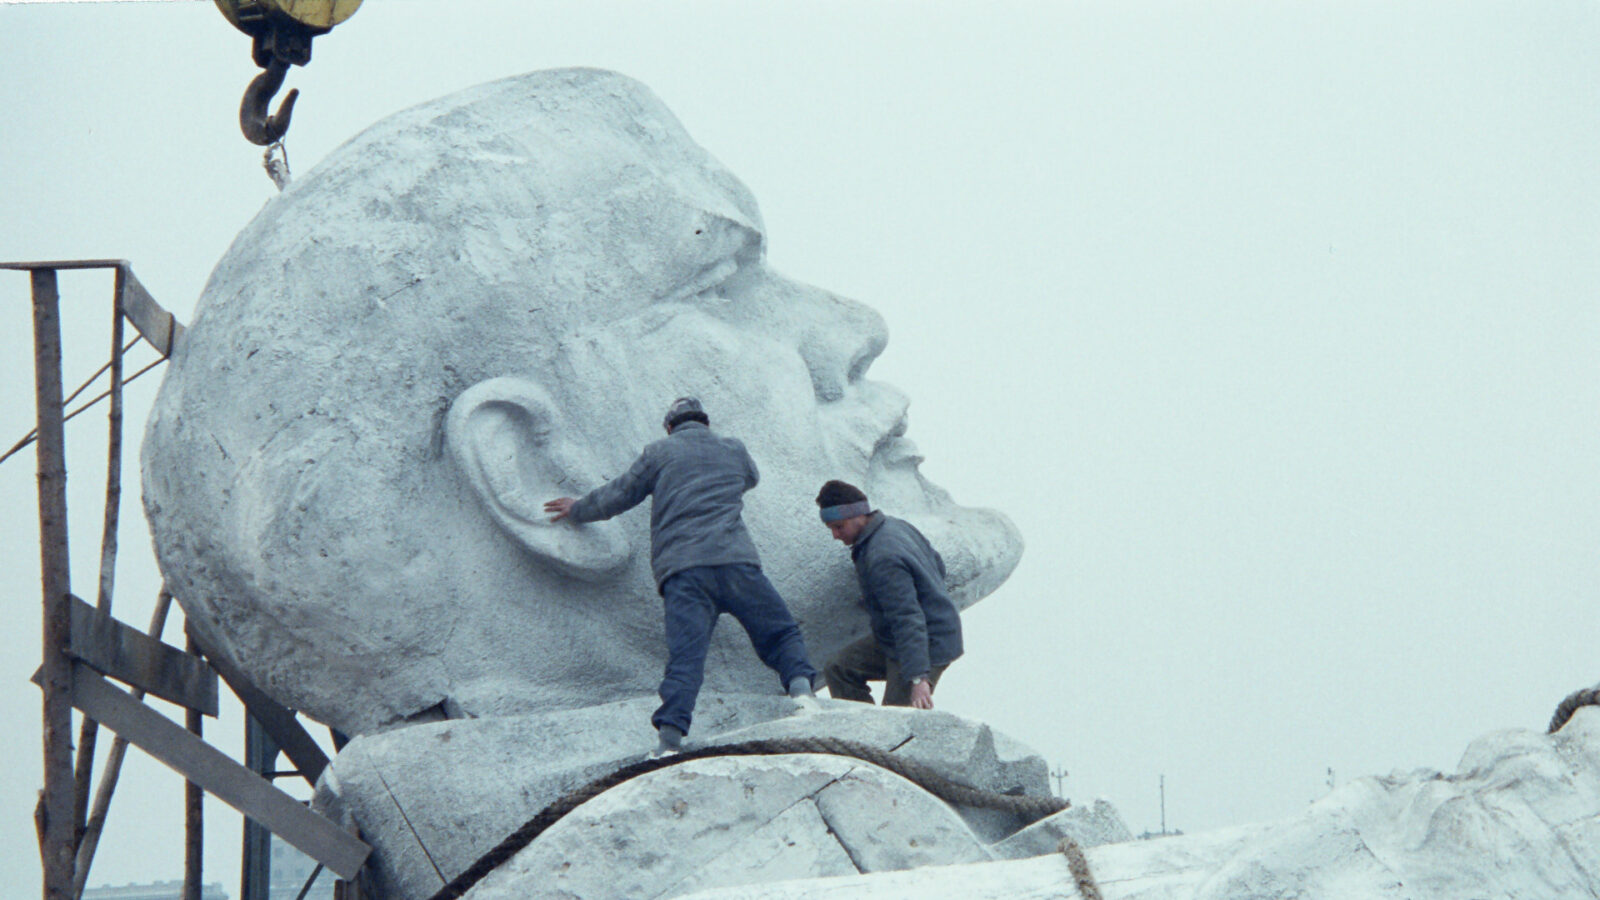 Filmstill aus den Film Symposium. Zwei Männer befinden sich auf dem Kragen einer Statur, die an einem Kran hängt. Die Statur stellt den russischen Politiker und kommunistischen Revolutionär Lenin sah.